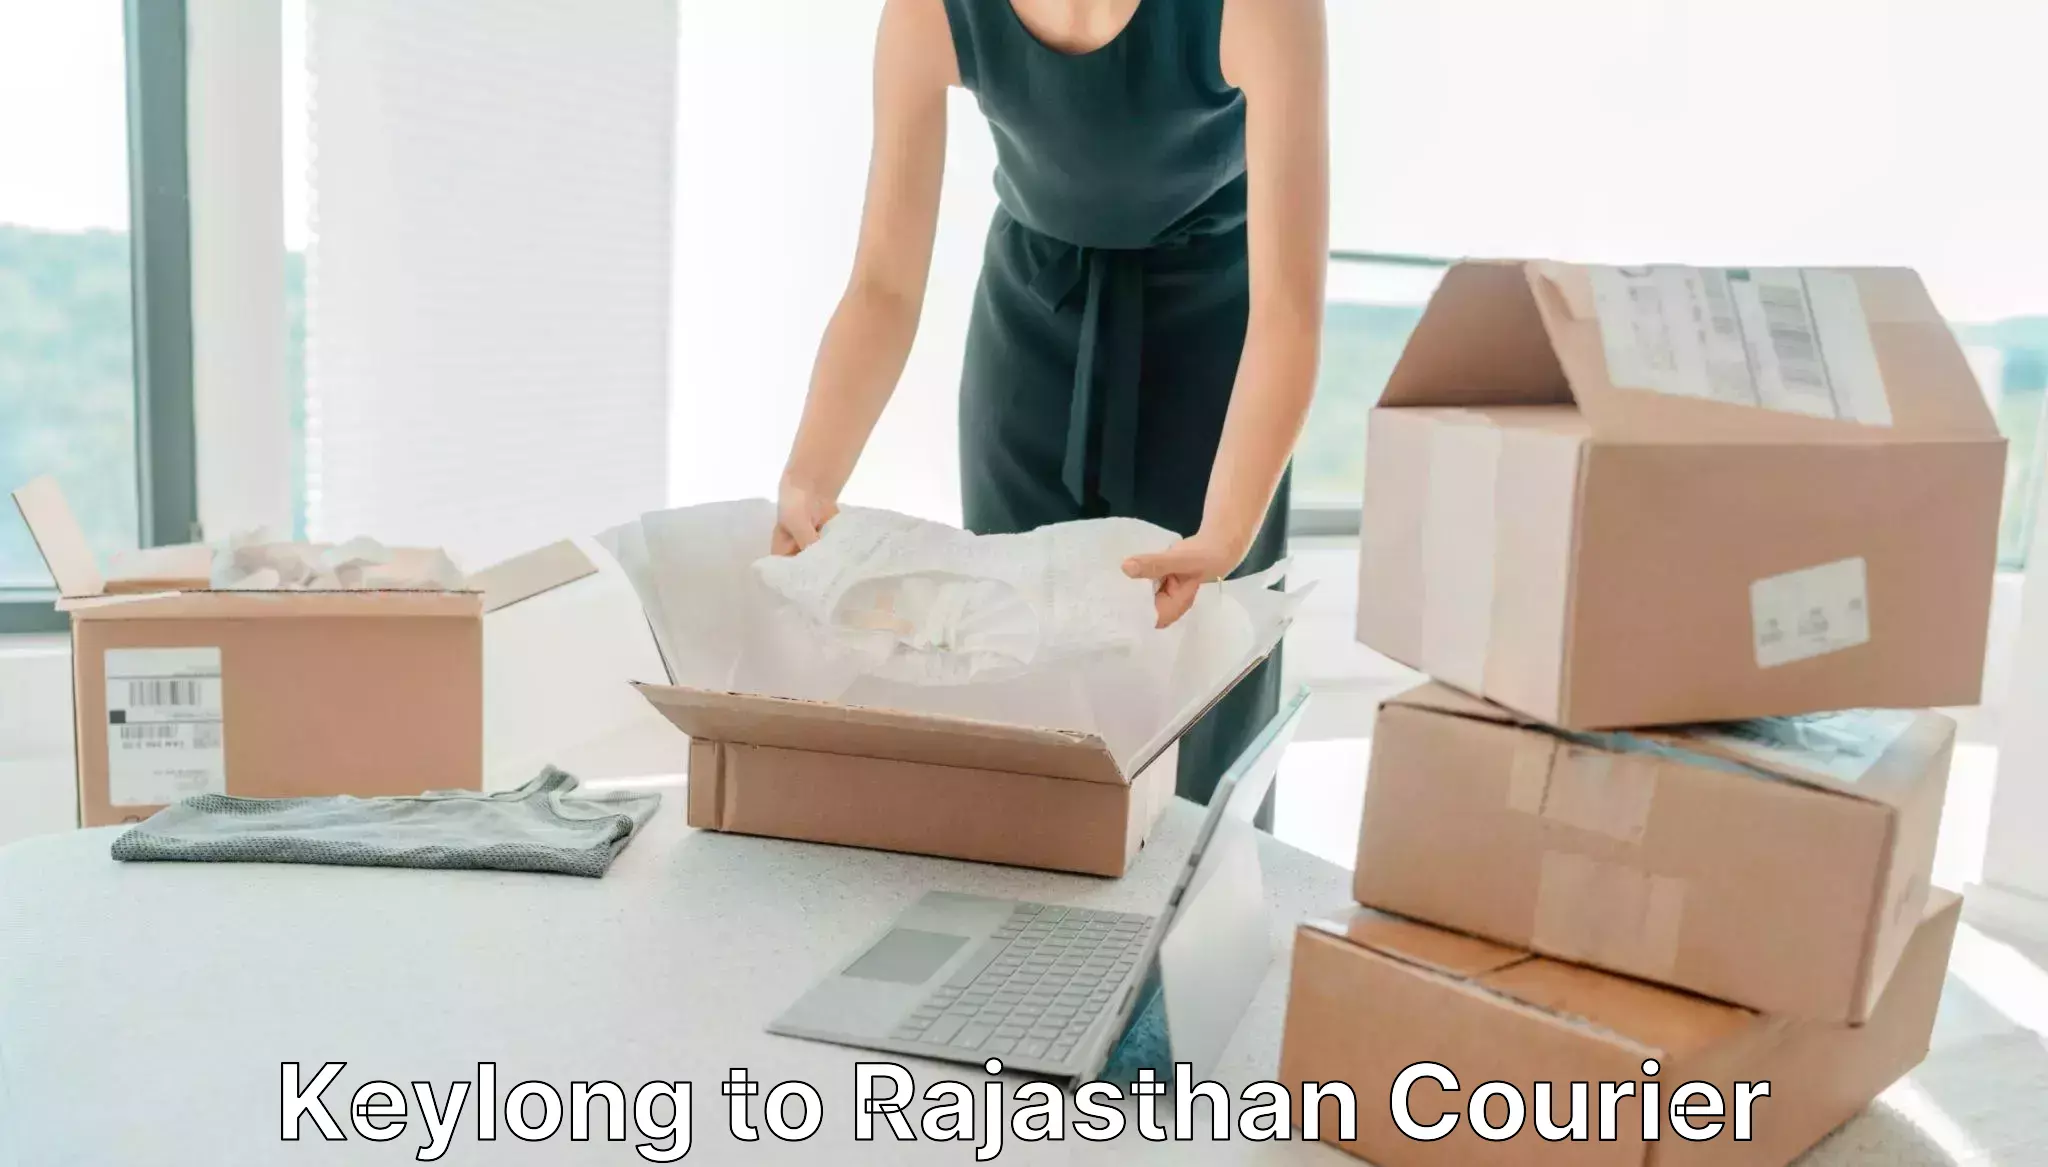 Digital courier platforms Keylong to Rajasthan